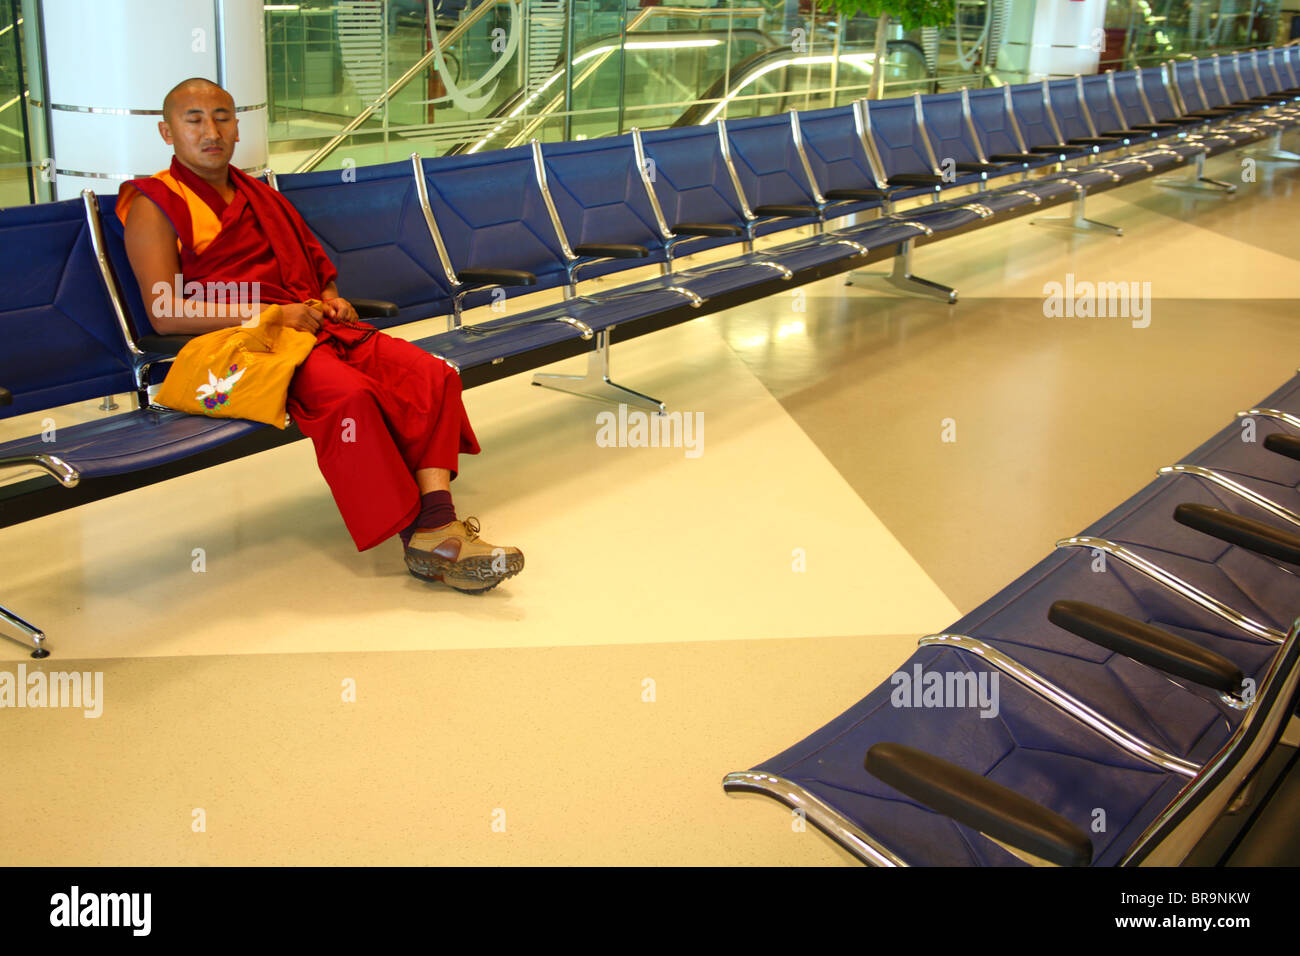 Des sièges vides dans un aéroport Banque D'Images